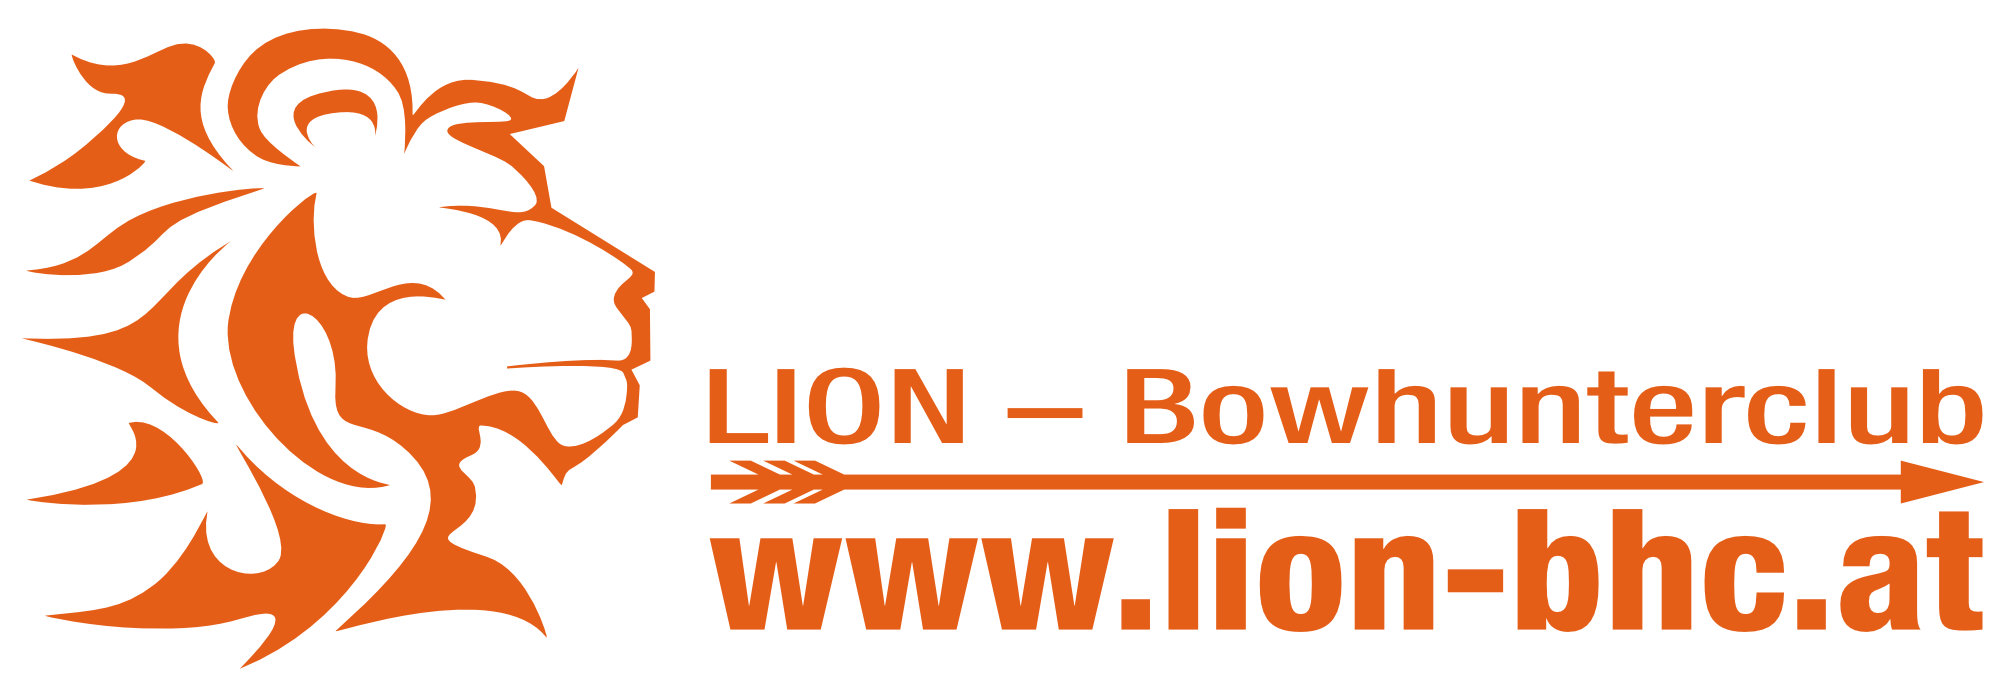 Lion-Bowhunterclub